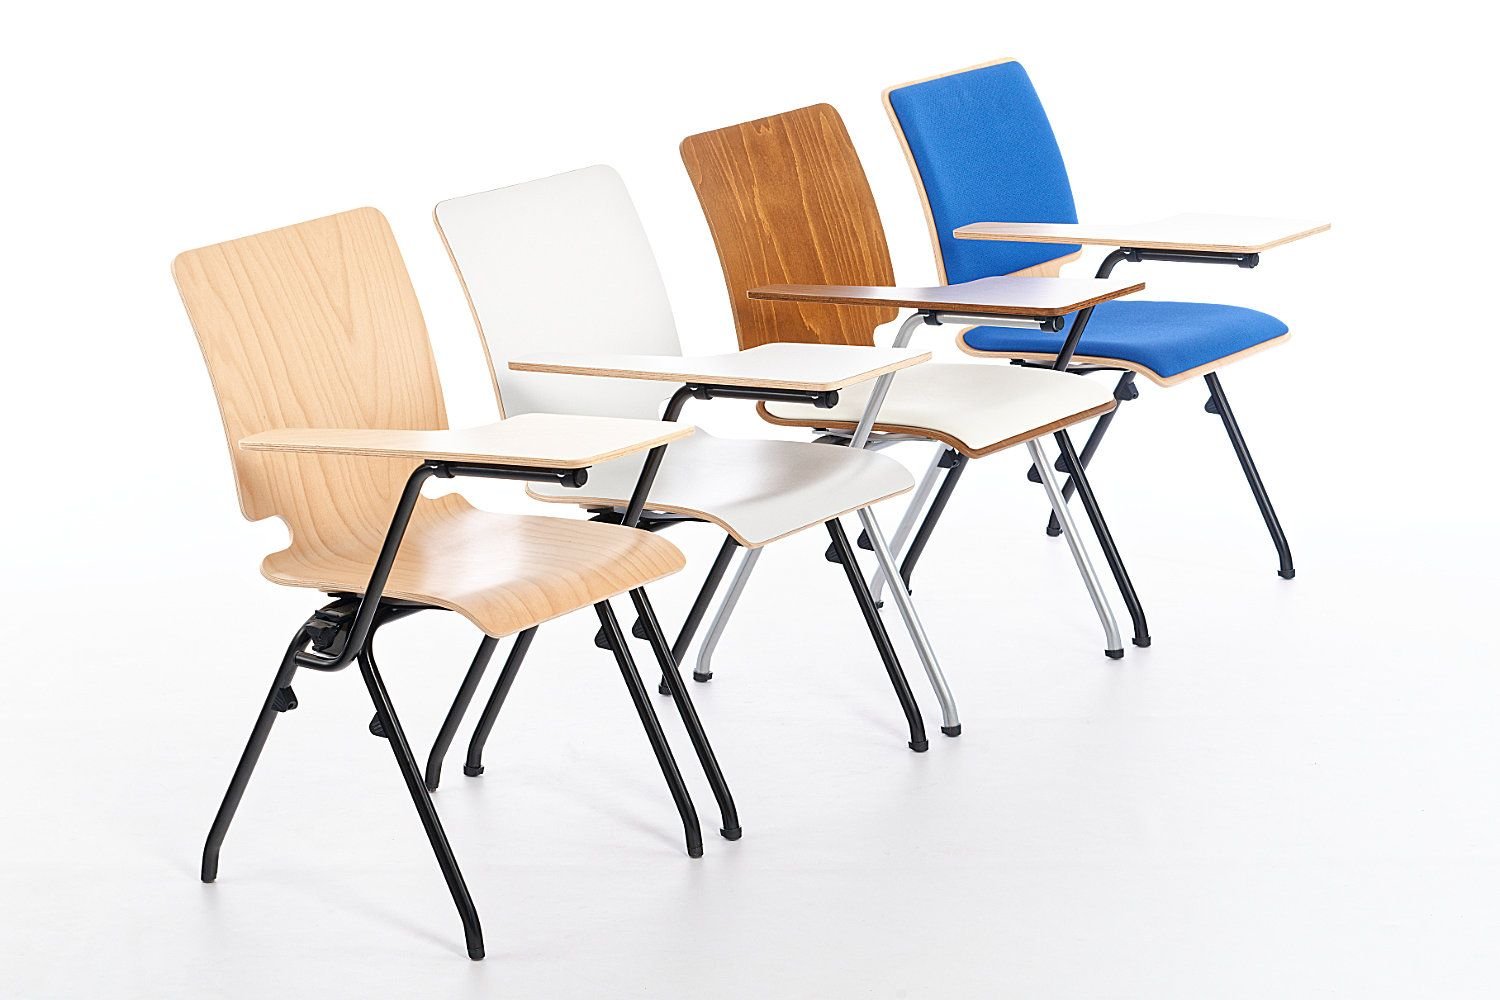 Stuhlreihen werden gerne für Seminare und Konferenzen genutzt